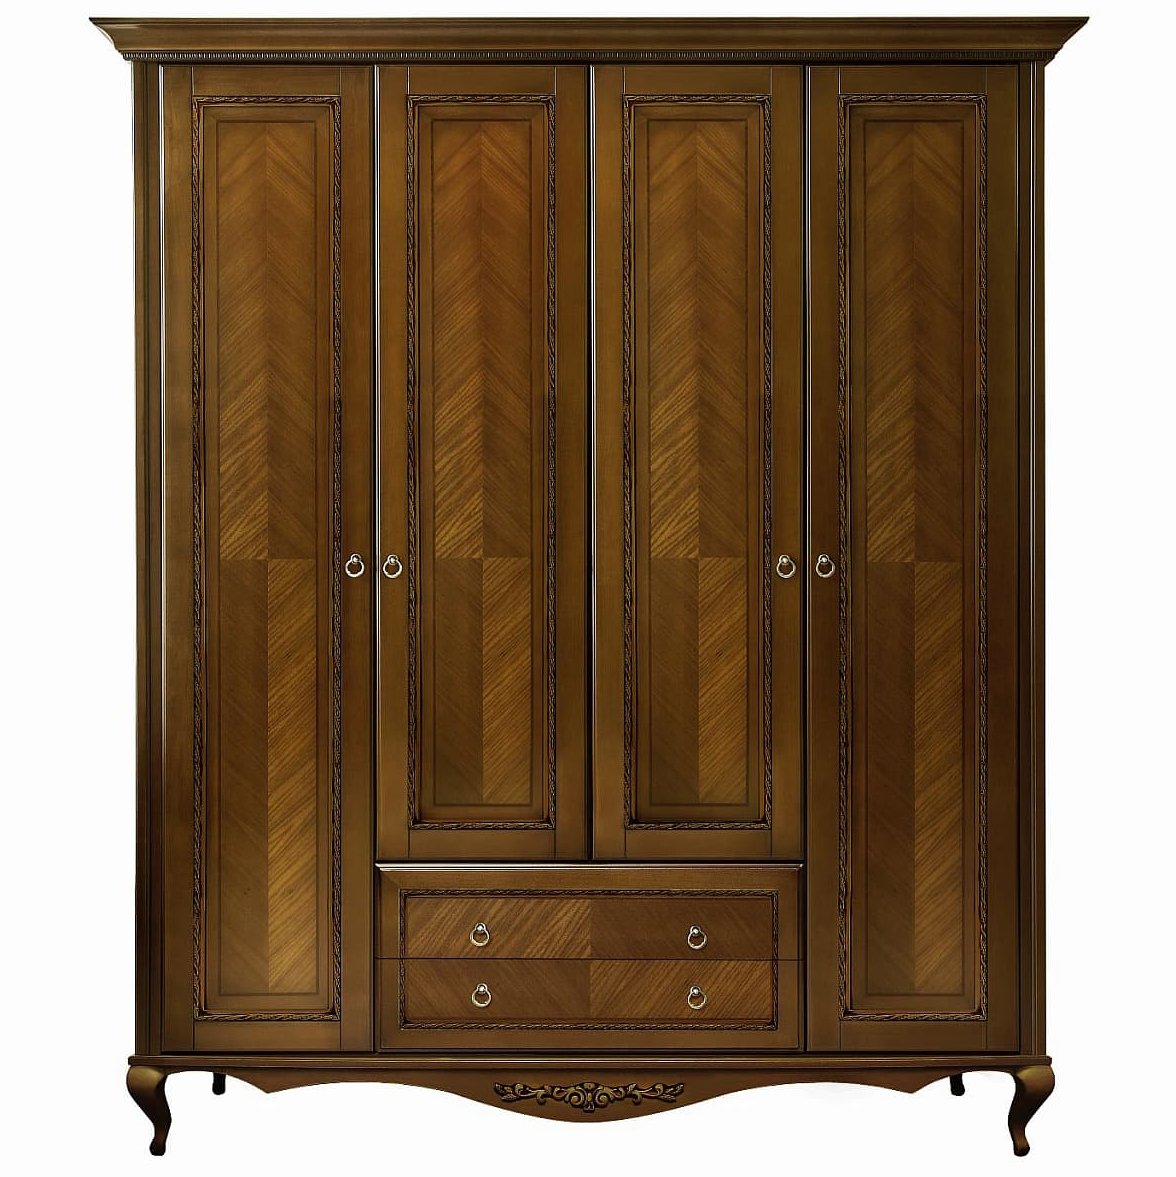 Шкаф платяной Timber Неаполь, 4-х дверный 204x65x227 см цвет: орех (T-524Д)T-524Д